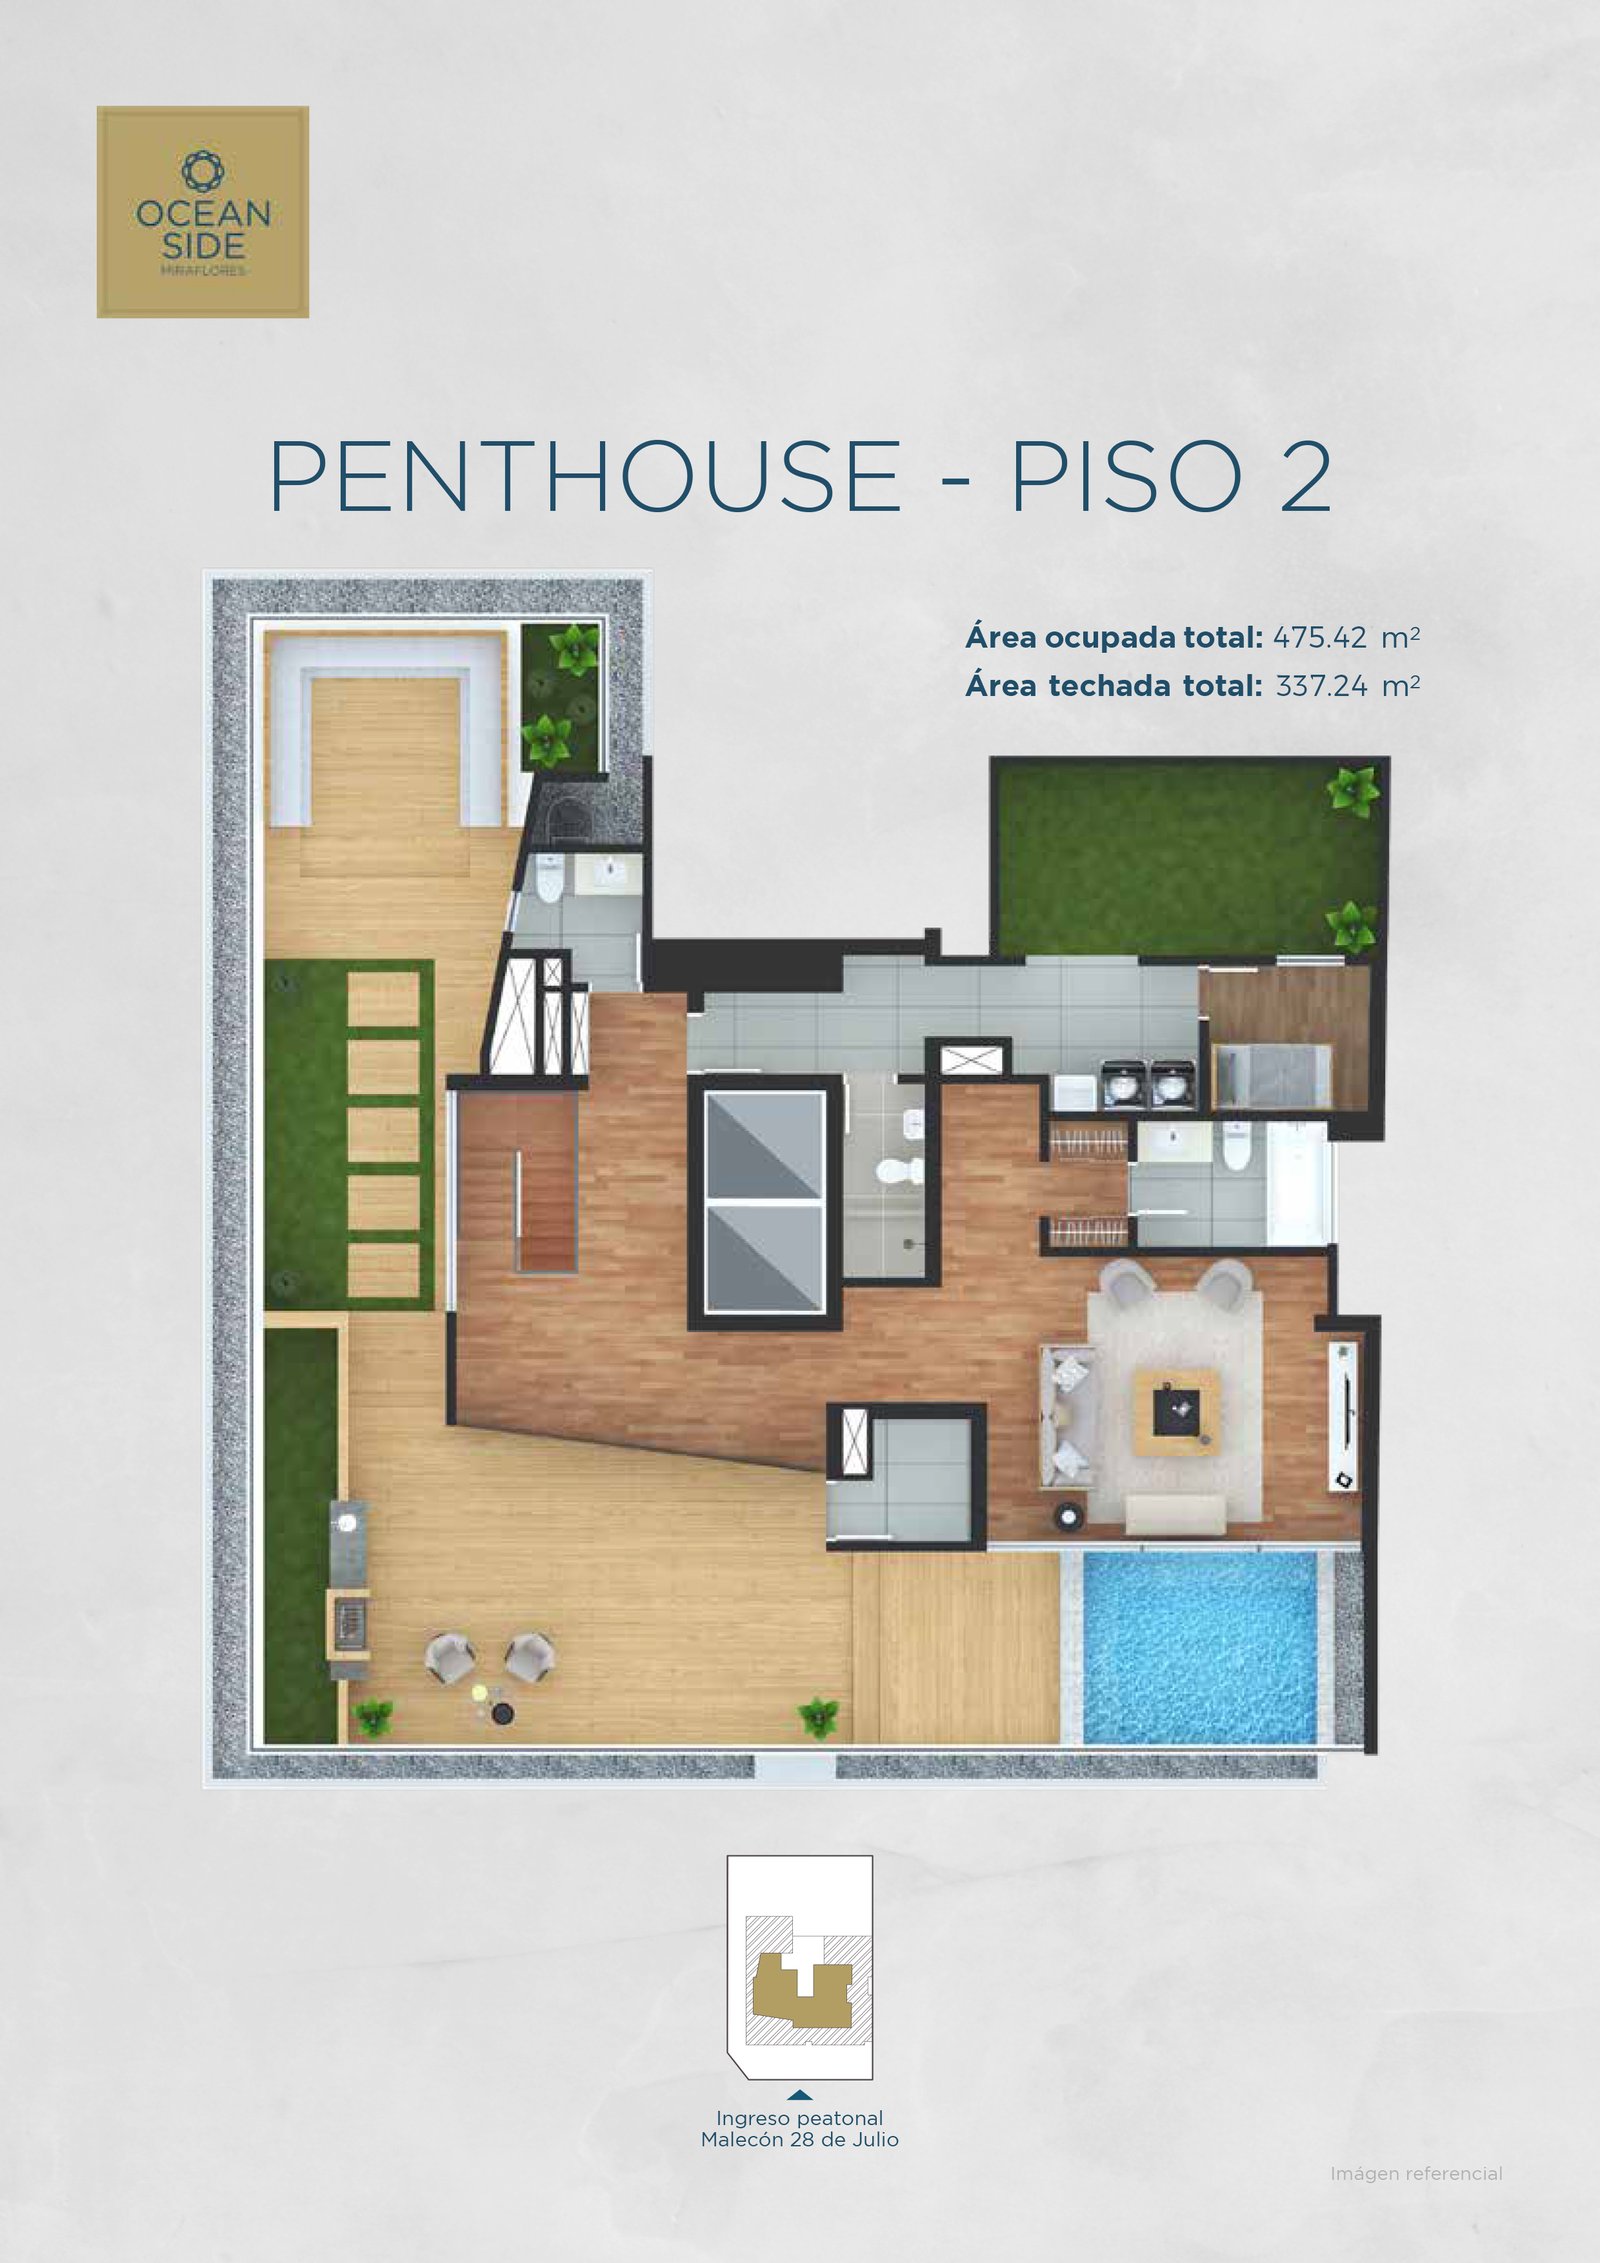 imagen Penthouse Piso 2 - Ocean Side Miraflores